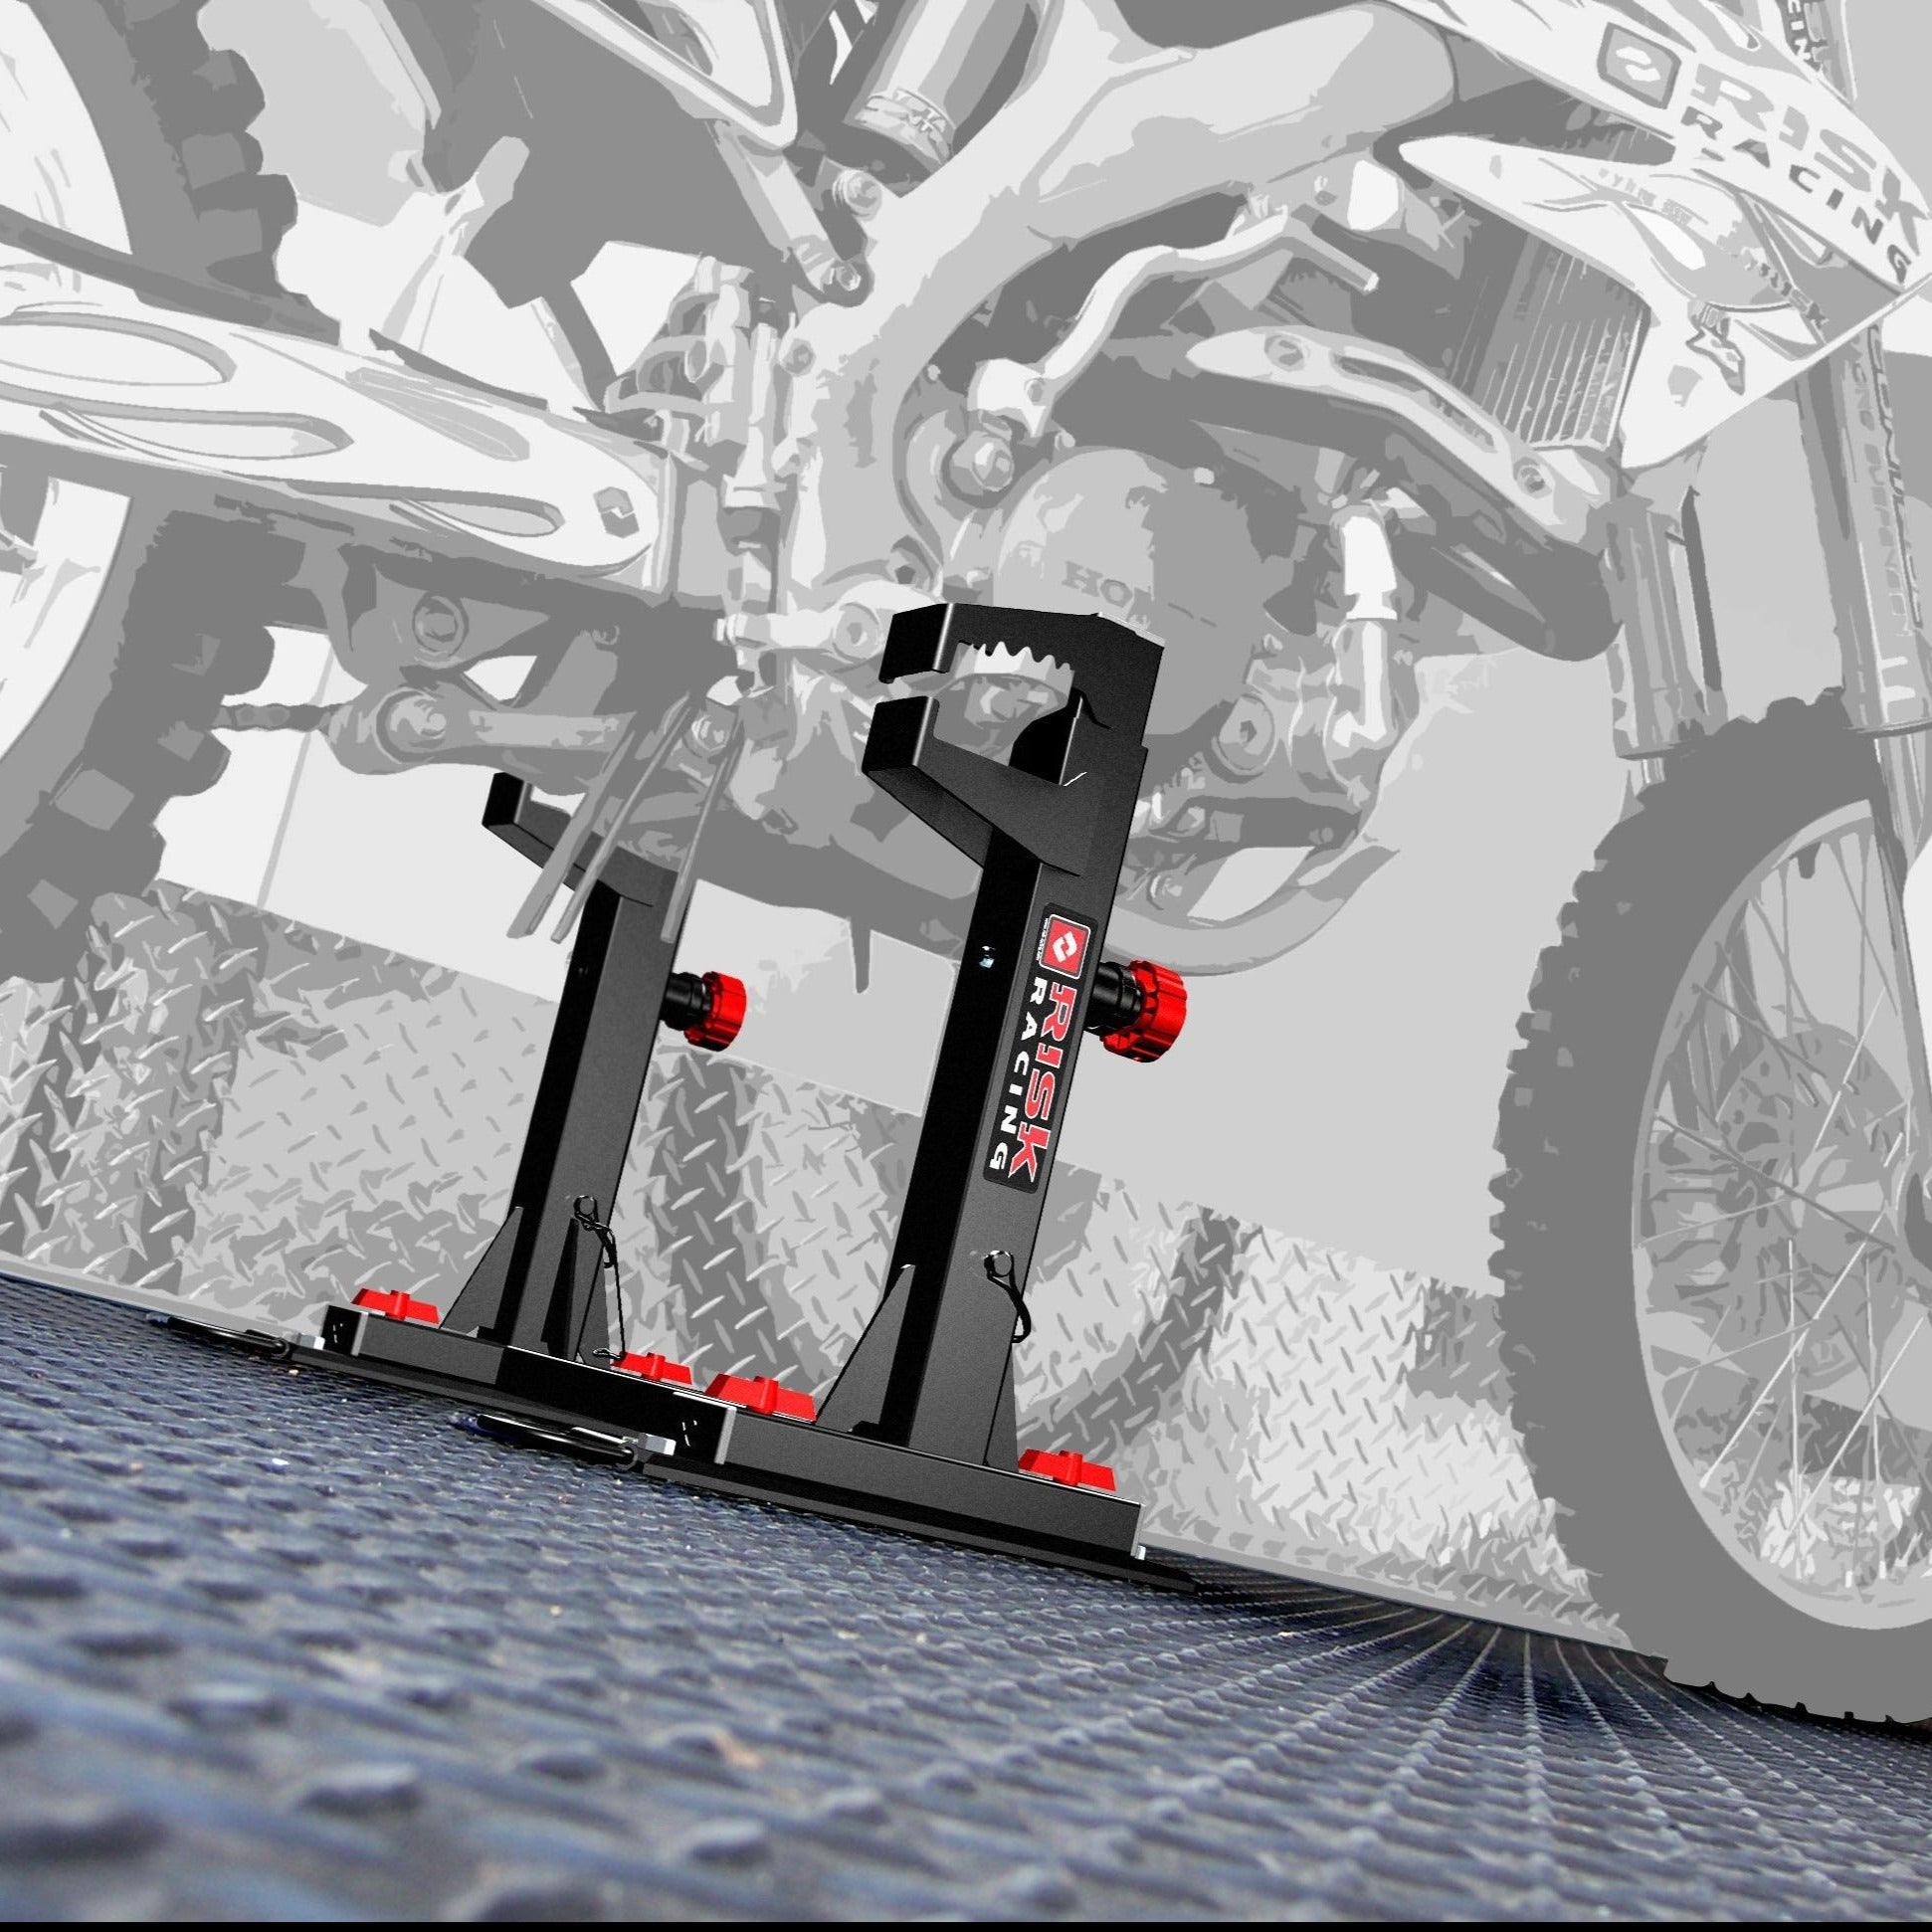 Lock-N-Load - Strapless Moto Transport System - Refurbished/Scratch & Dent - Risk Racing